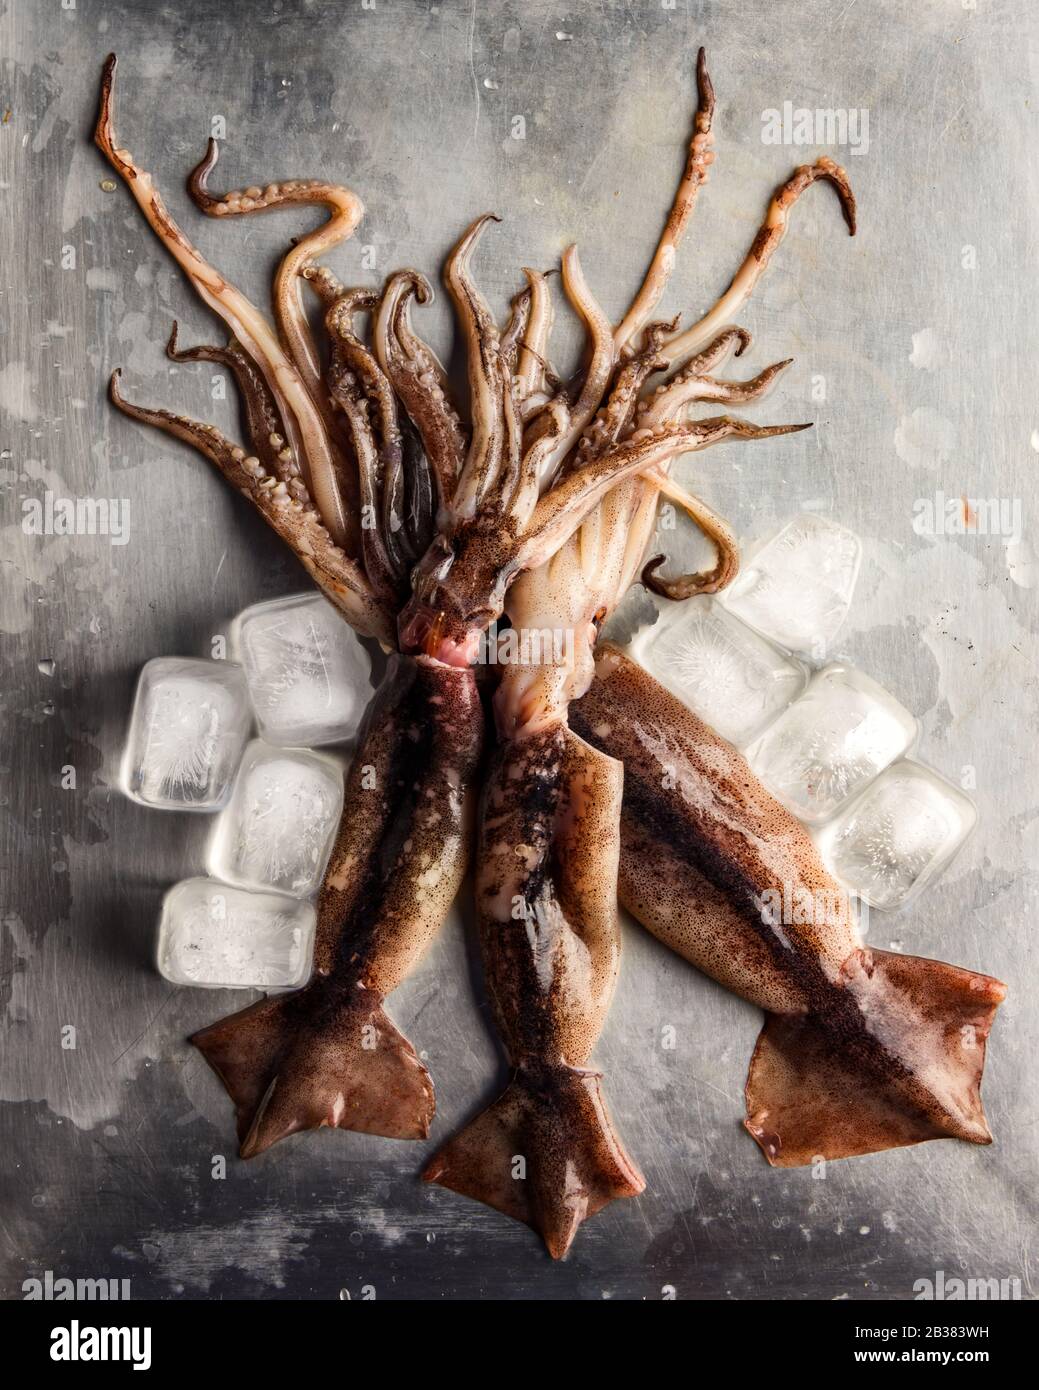 Calmars brut avec glaçons sur plaque en acier. Ingrédient de fruits de mer. Photographie alimentaire Banque D'Images